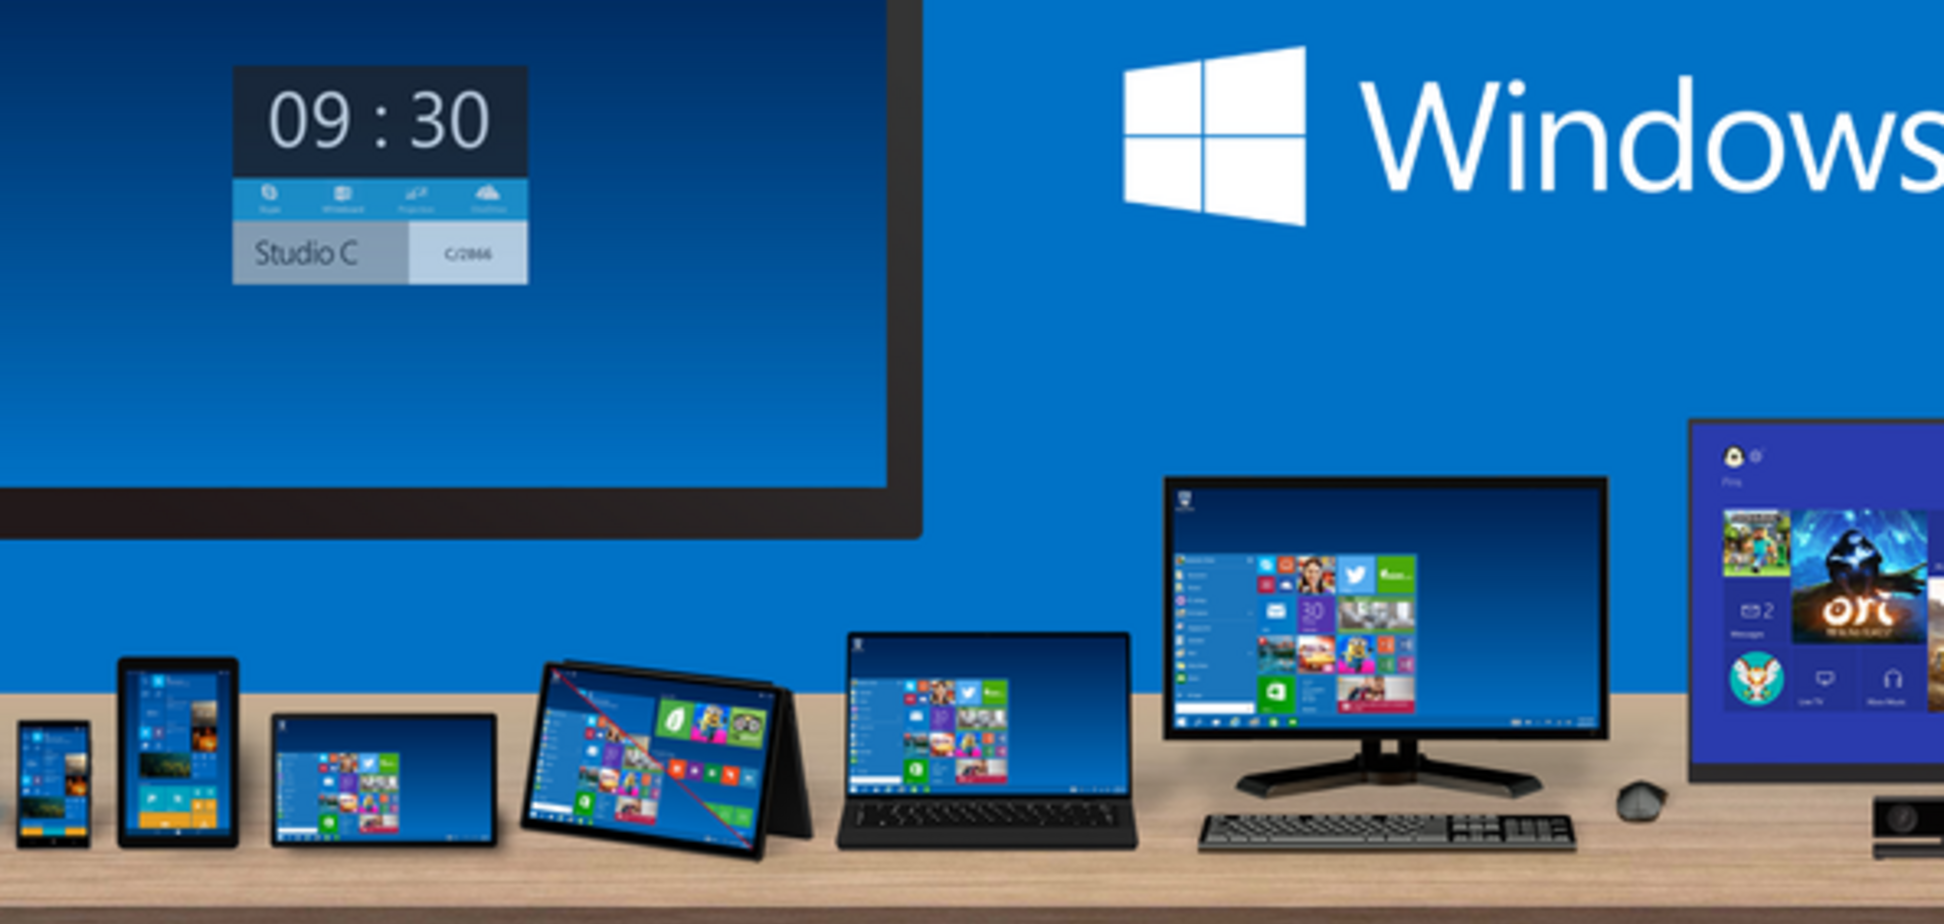 Вышла Windows 10: как скачать и подготовить ПК к работе